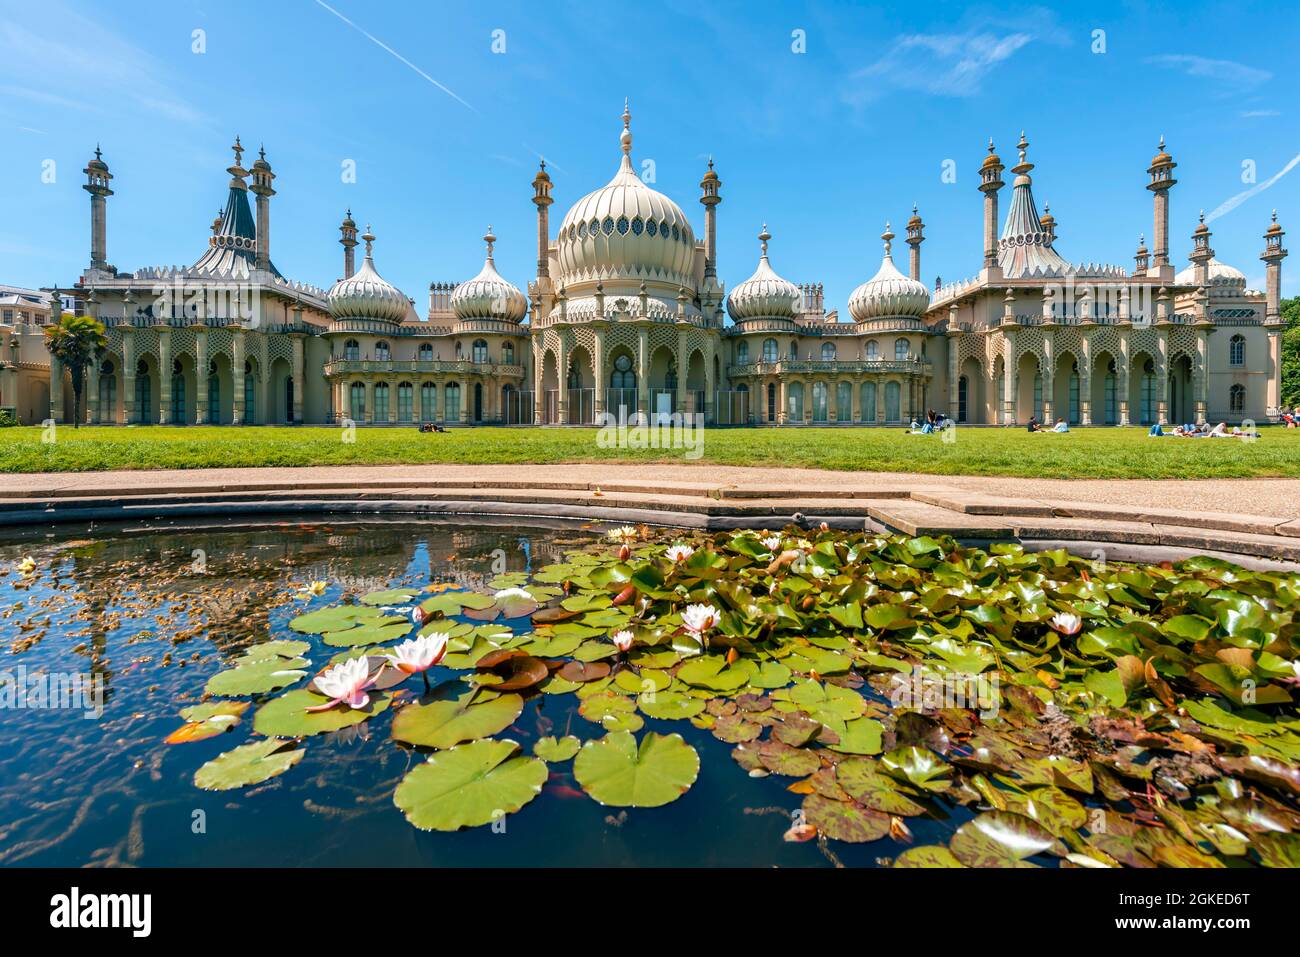 Le palais du Pavillon Royal se reflète avec un étang aux nénuphars, Brighton, East Sussex, Angleterre, Royaume-Uni Banque D'Images